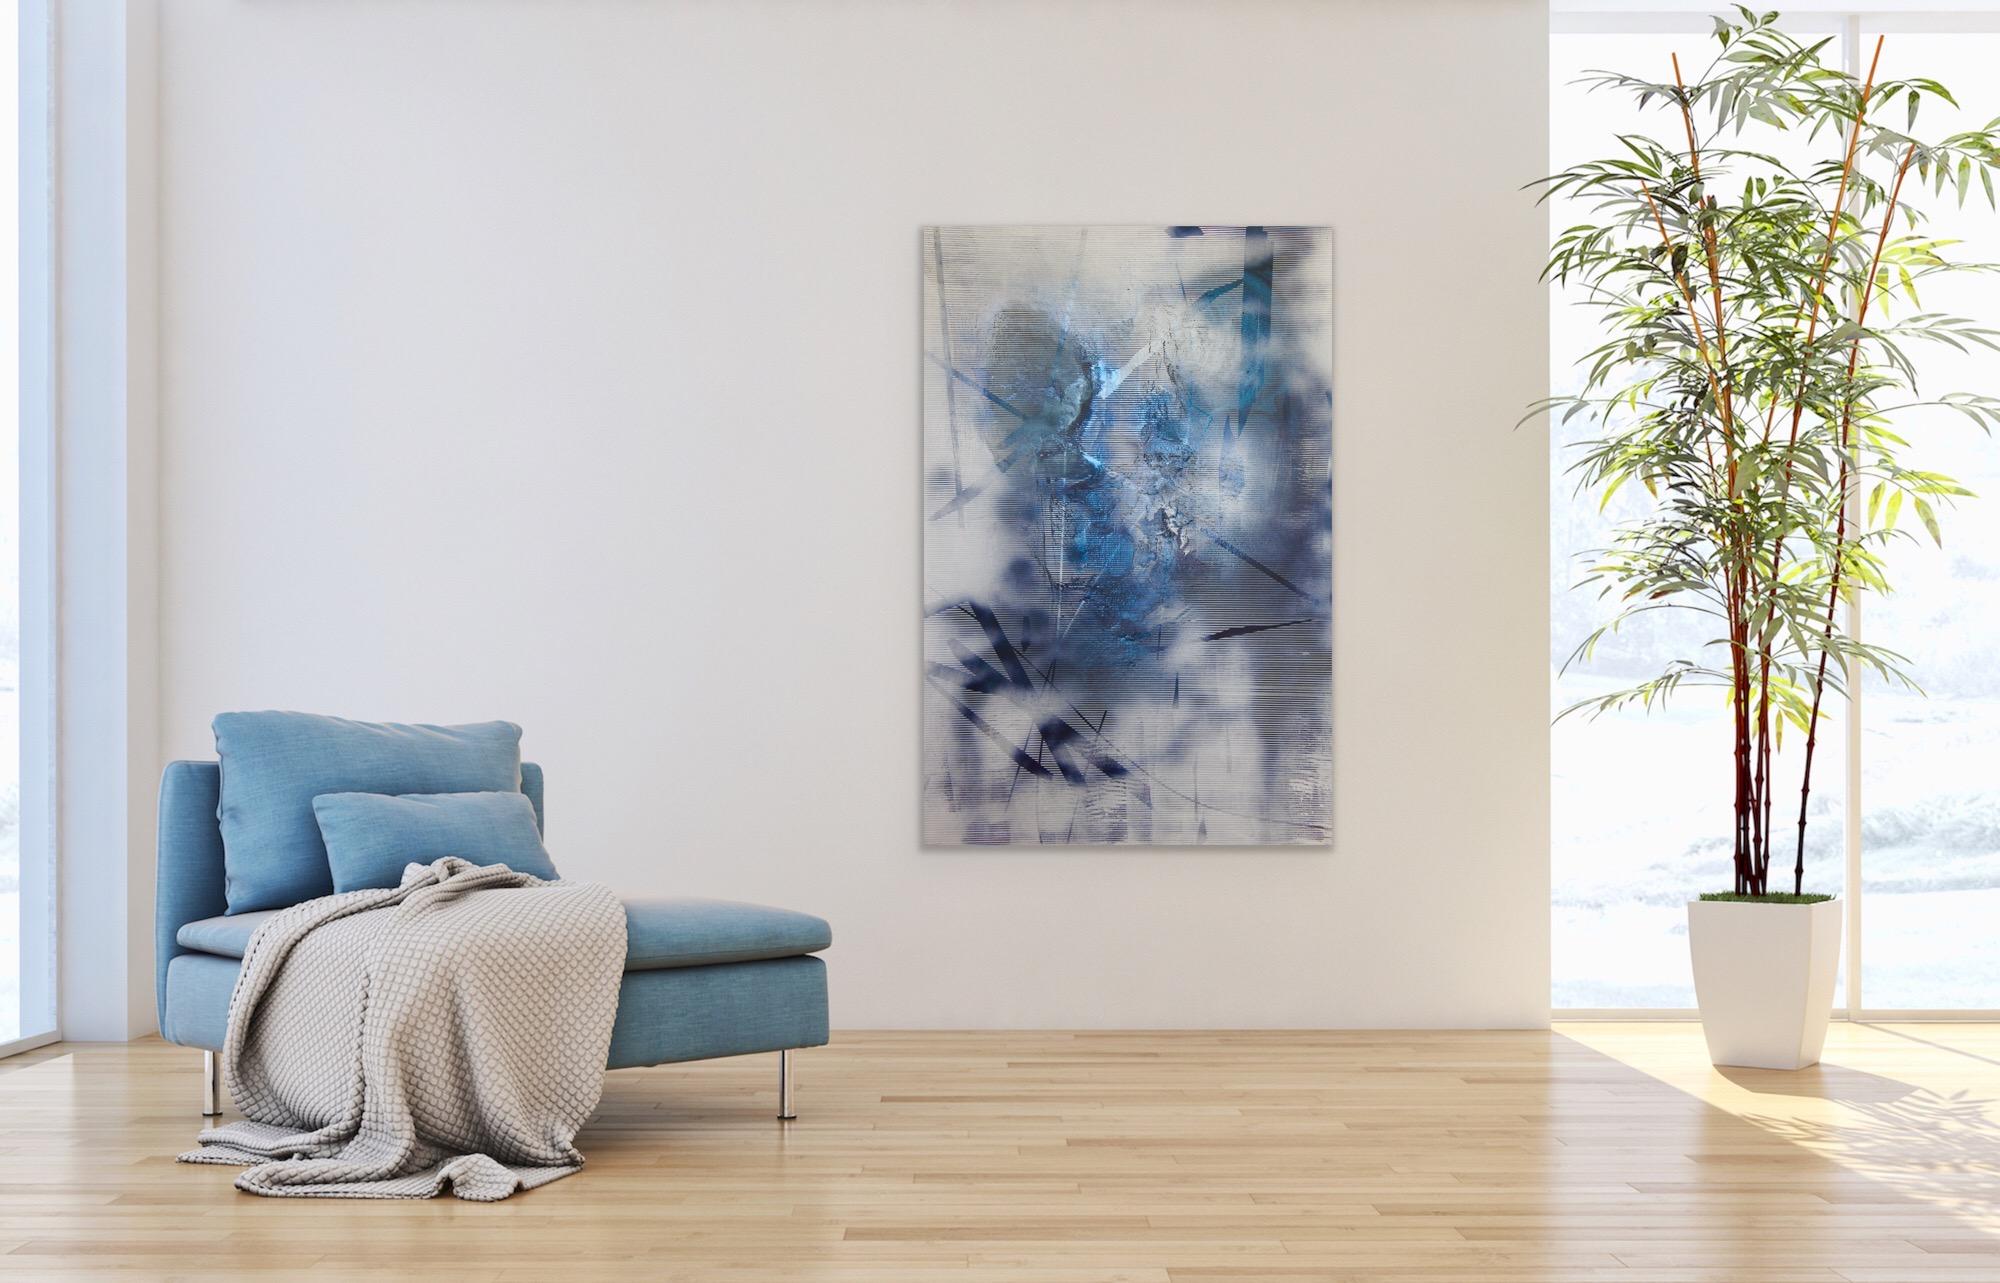 Bildschirm tbd4 (abstrakte Gittermalerei zeitgenössische blaue weiße atmosphärische Kunst) (Geometrische Abstraktion), Mixed Media Art, von Melisa Taylor Metzger